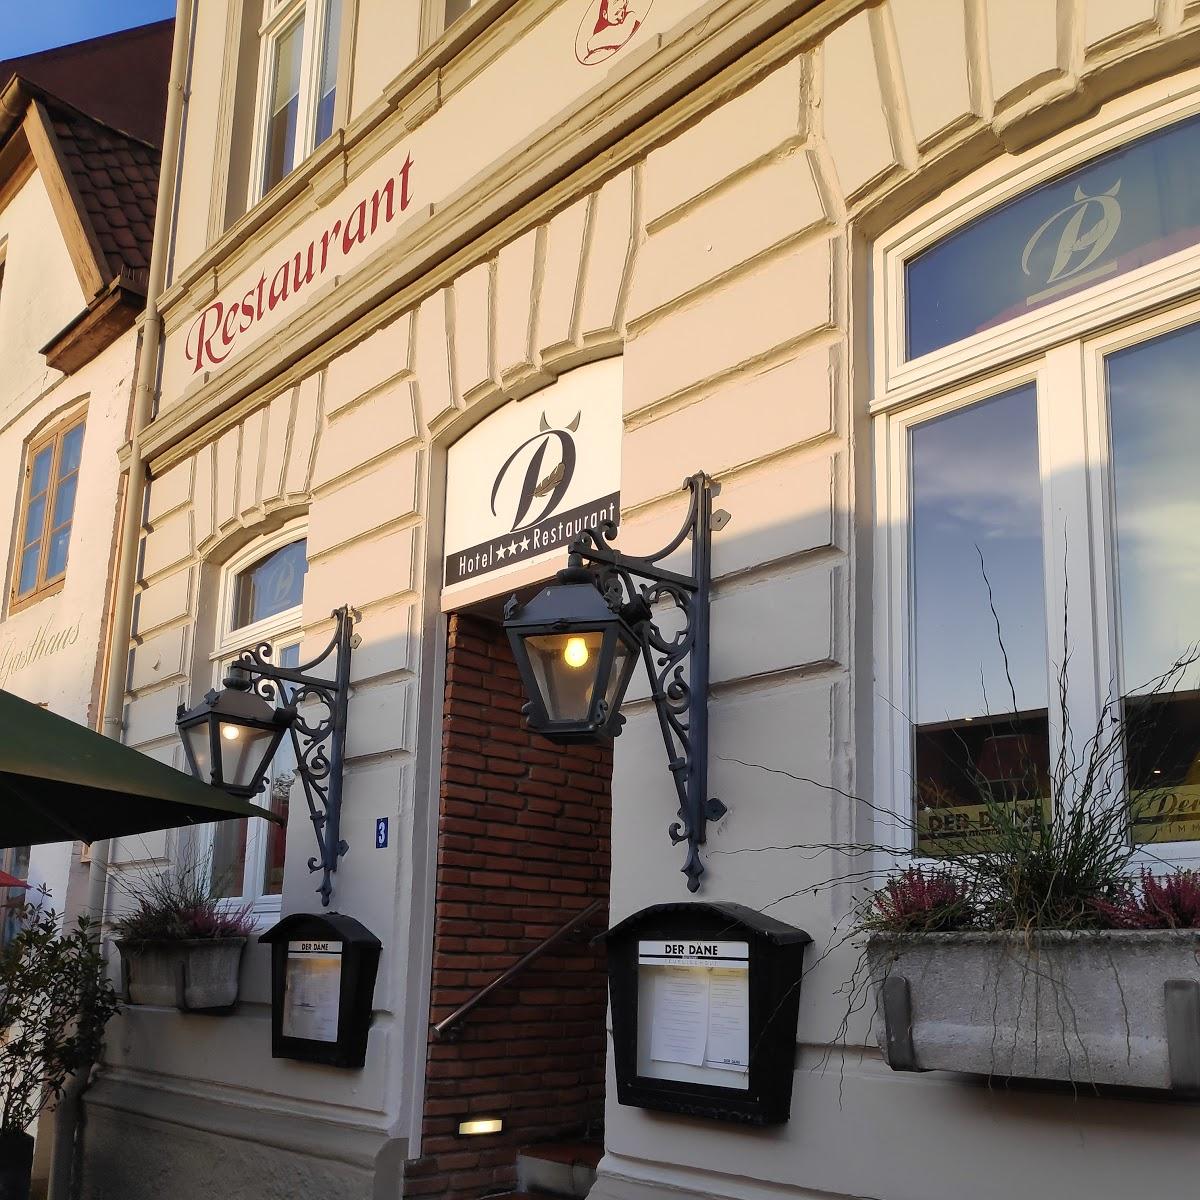 Restaurant "Der Däne" in Glückstadt